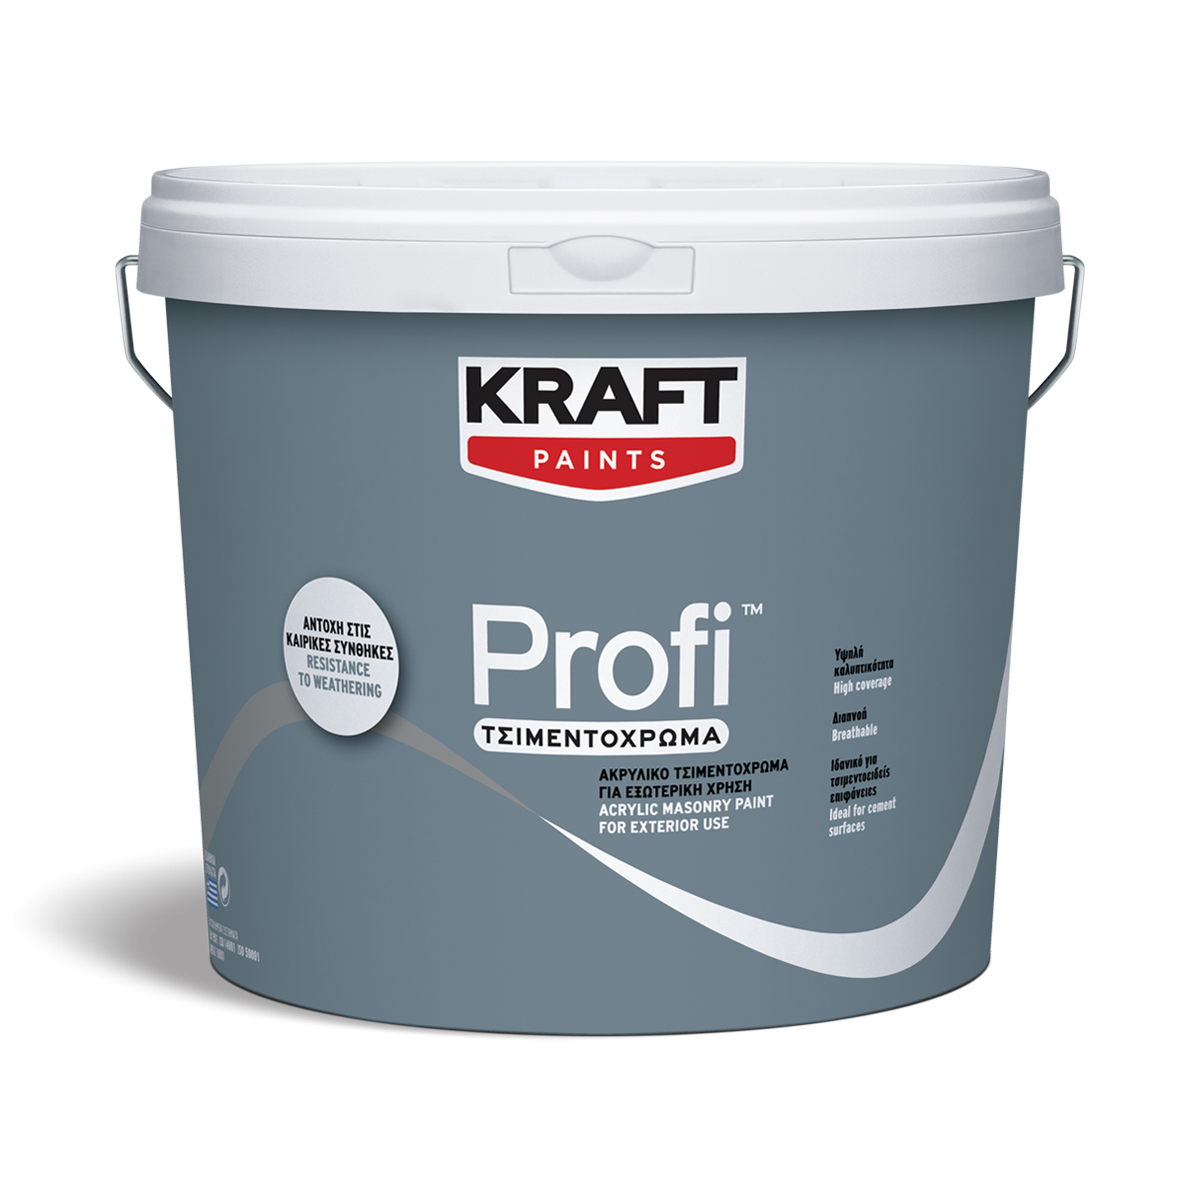 Ακρυλικό Τσιμεντόχρωμα Profi- Kraft Paints "Λευκό" 3L